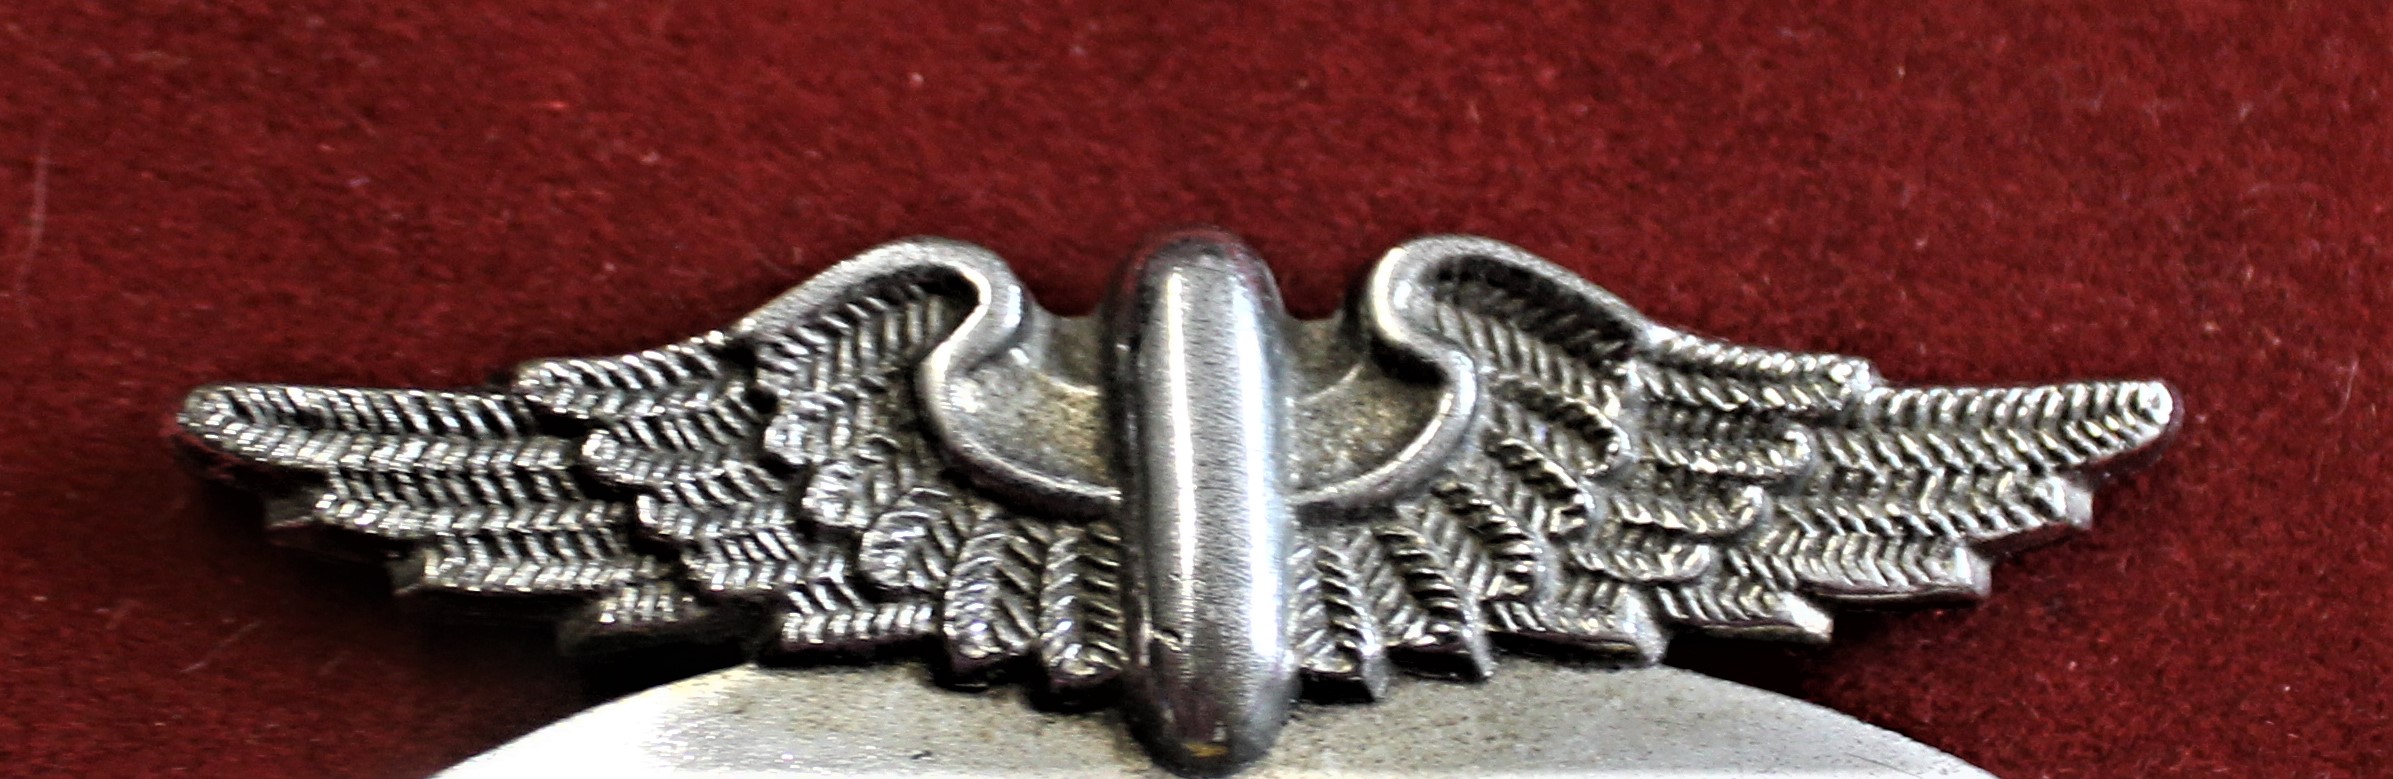 1945-57 AA Car Badge No 9A47543 - Image 2 of 3